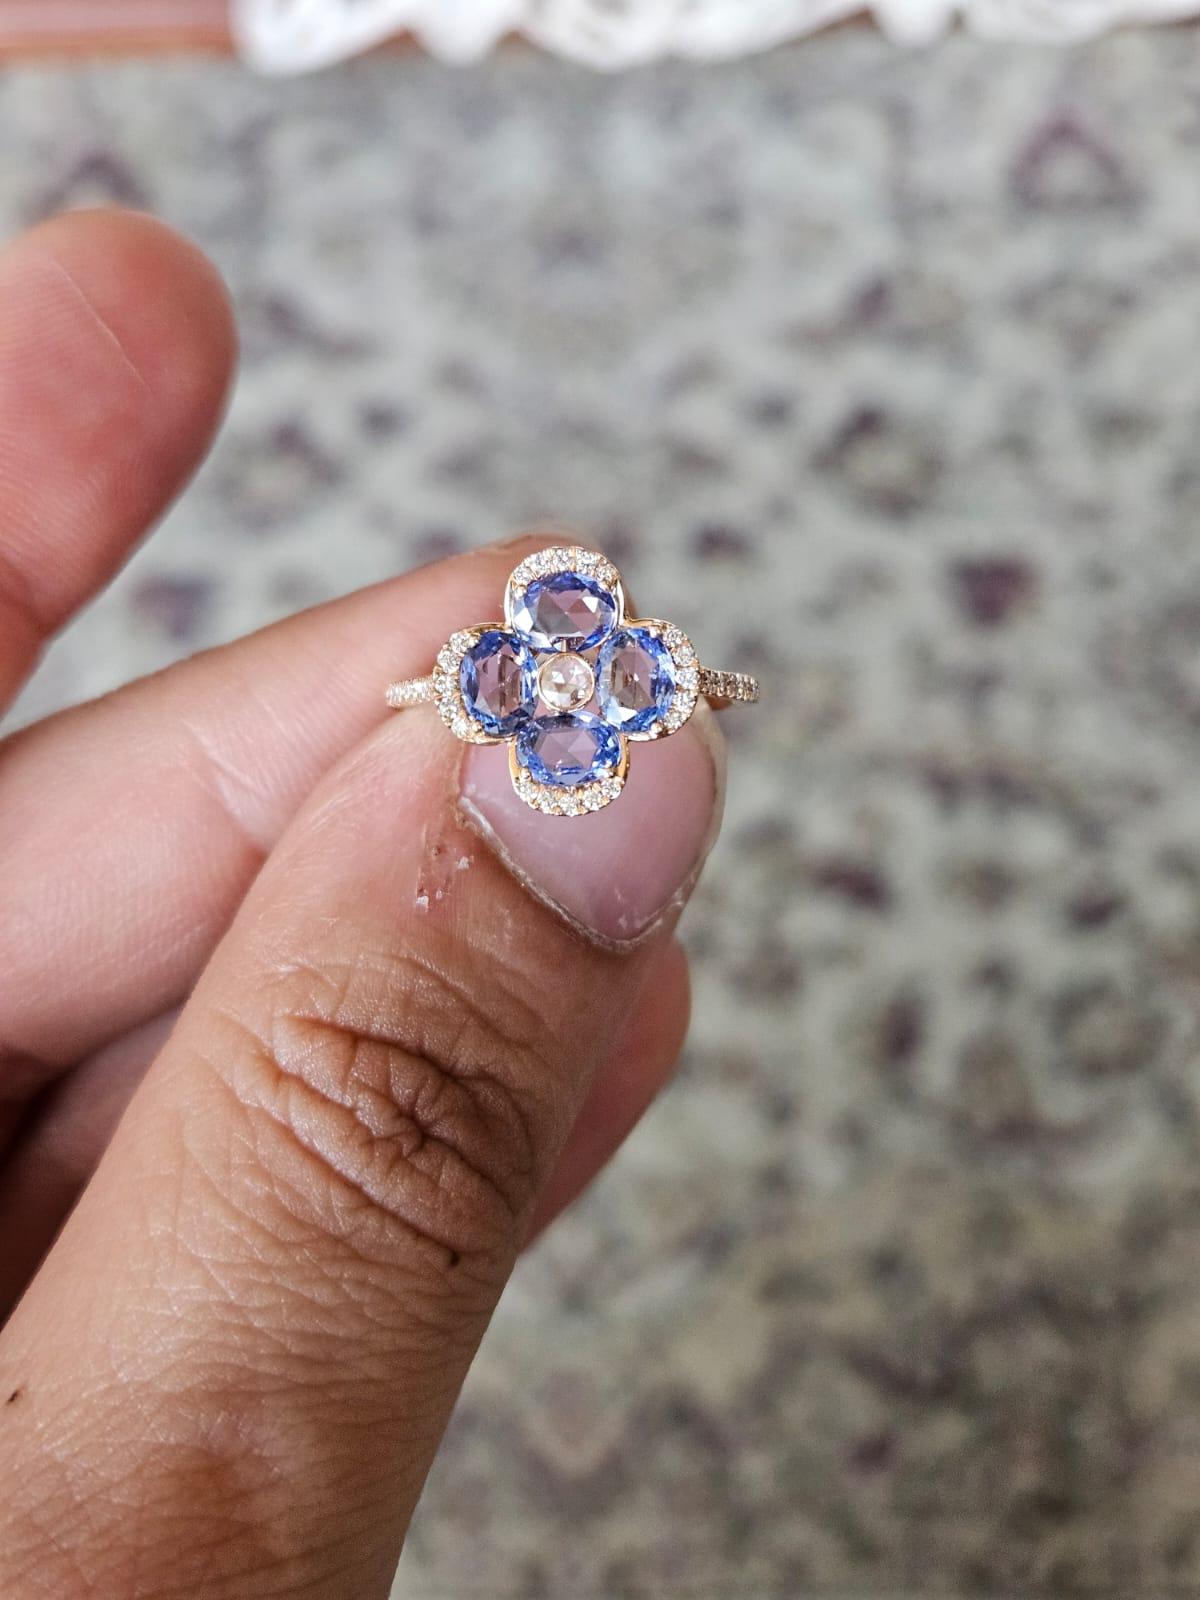 Eine sehr schöne und wunderschöne, modernen Stil, blaue Saphire Verlobungsring in 18K Rose Gold & Diamanten gesetzt. Das Gewicht des blauen Saphirs im Rosenschliff beträgt 1.62 Karat. Die blauen Saphire stammen aus Ceylon (Sri Lanka). Das Gewicht